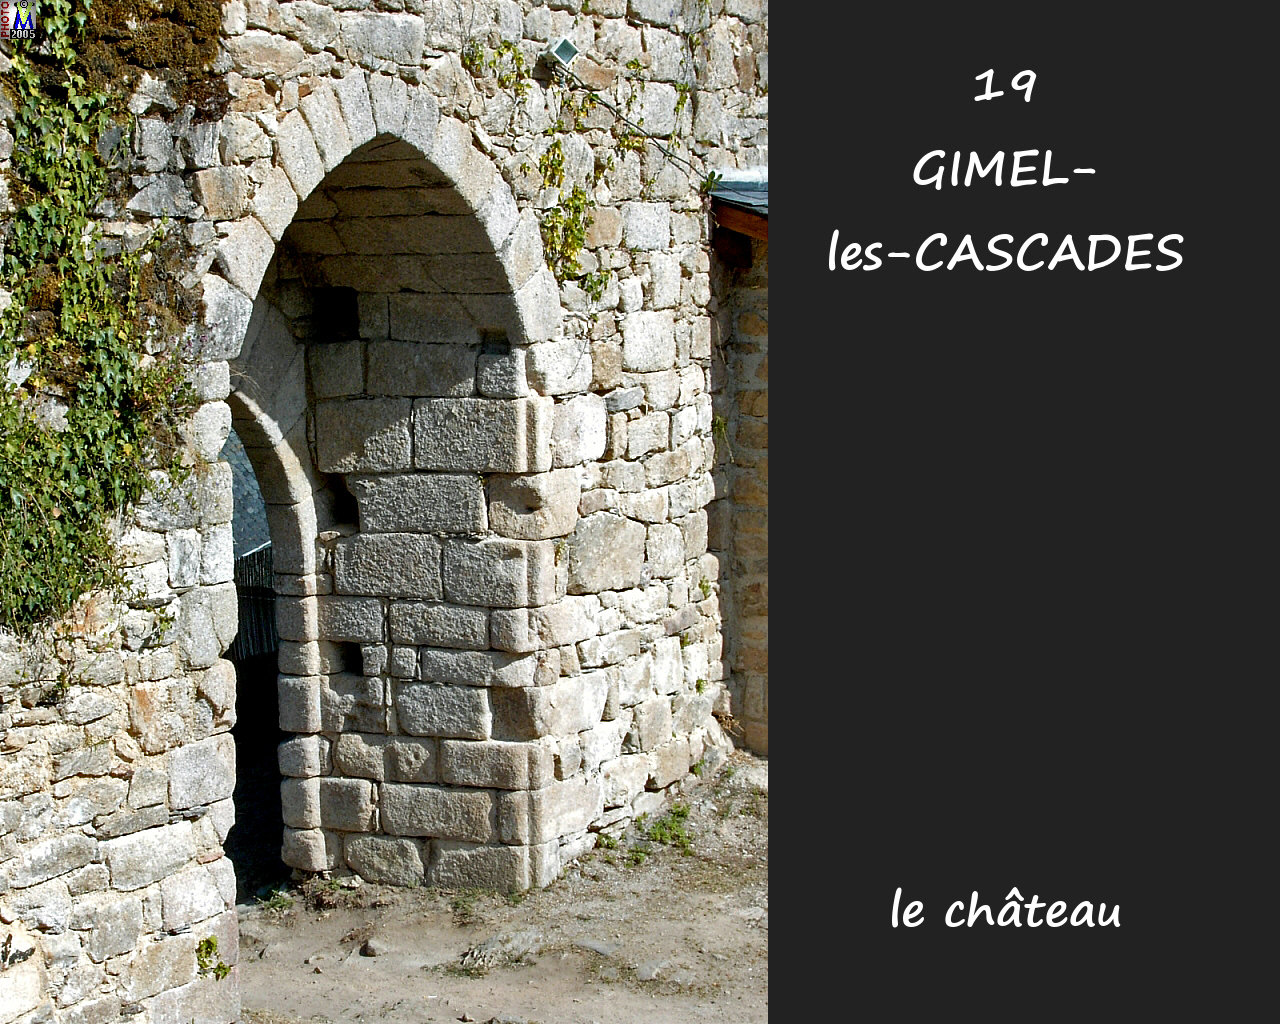 19GIMEL_chateau_100.jpg